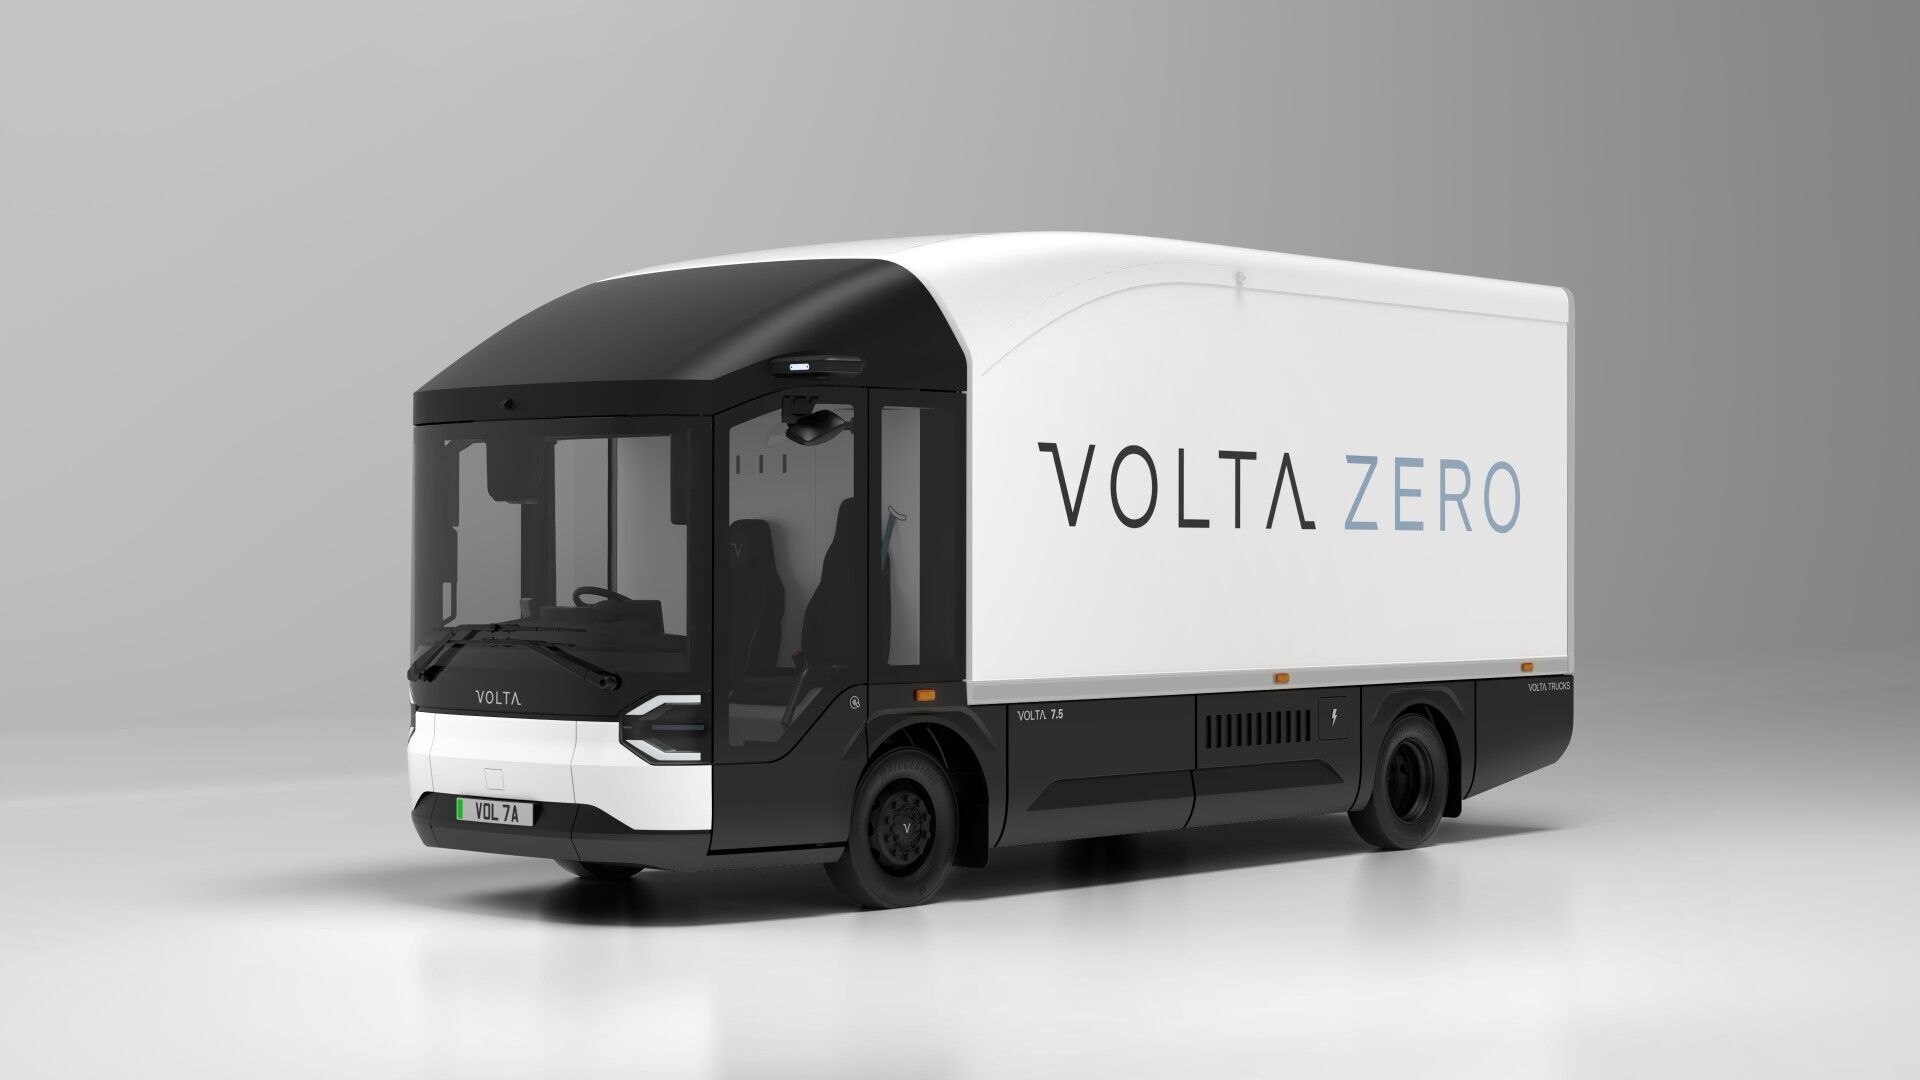 Нові версії Volta Zero мають укорочене шасі, зменшені звиси, а також обтічник на даху, що допомагає покращити аеродинаміку